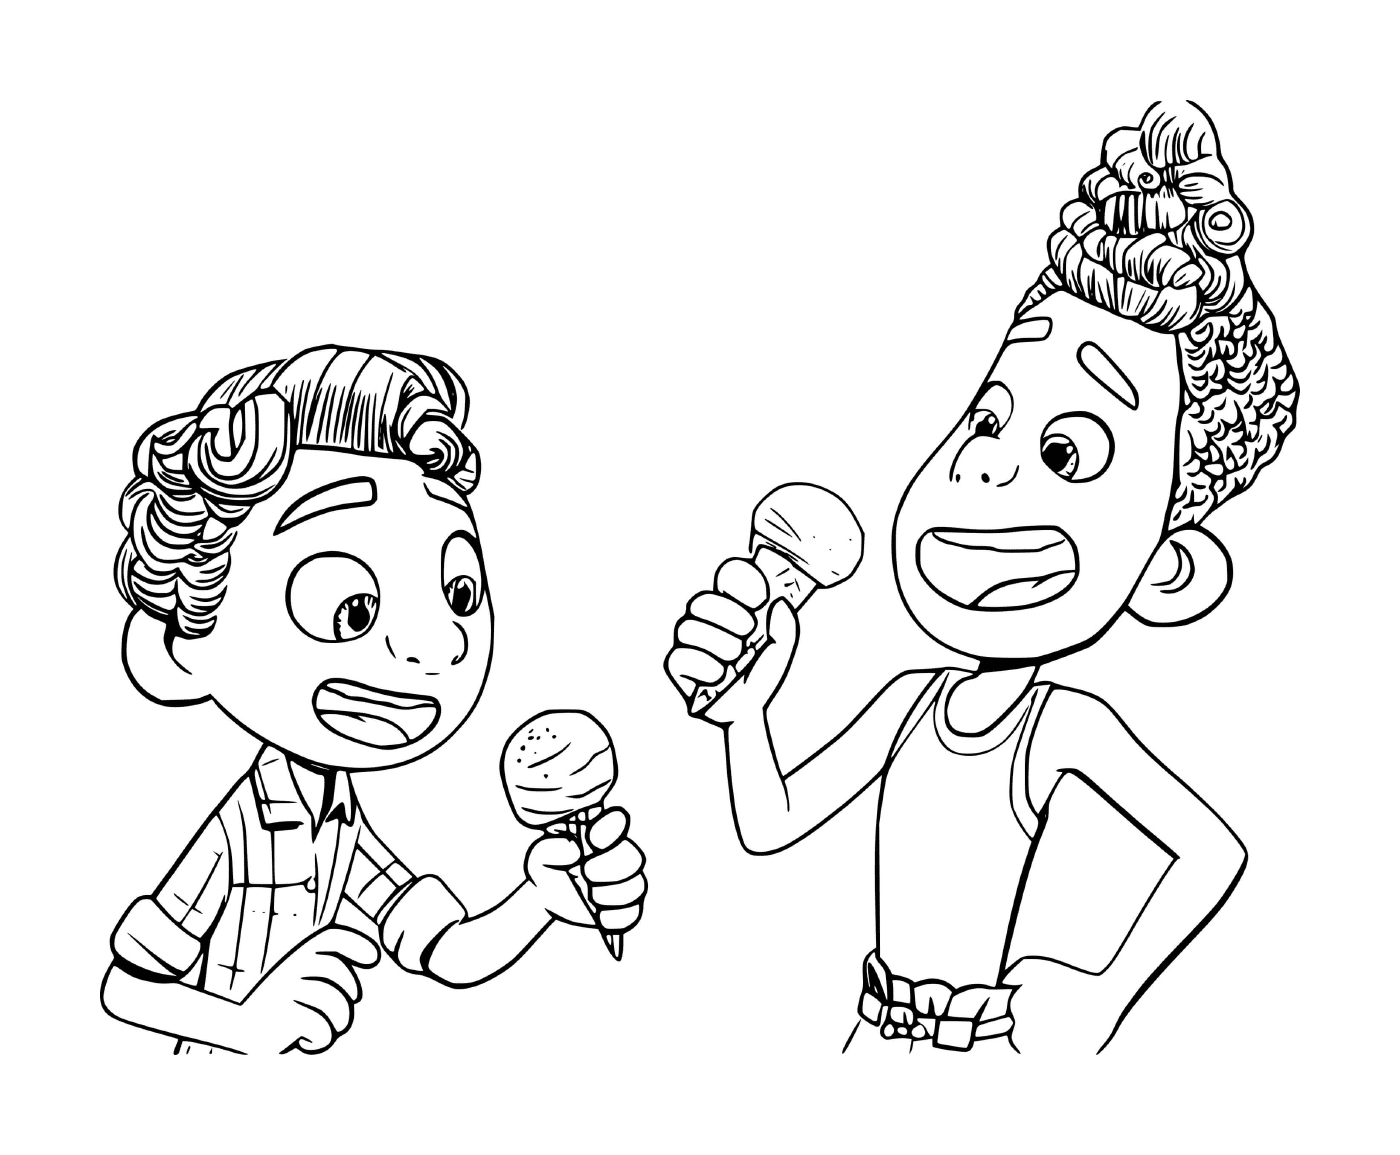  Два человека едят мороженое 